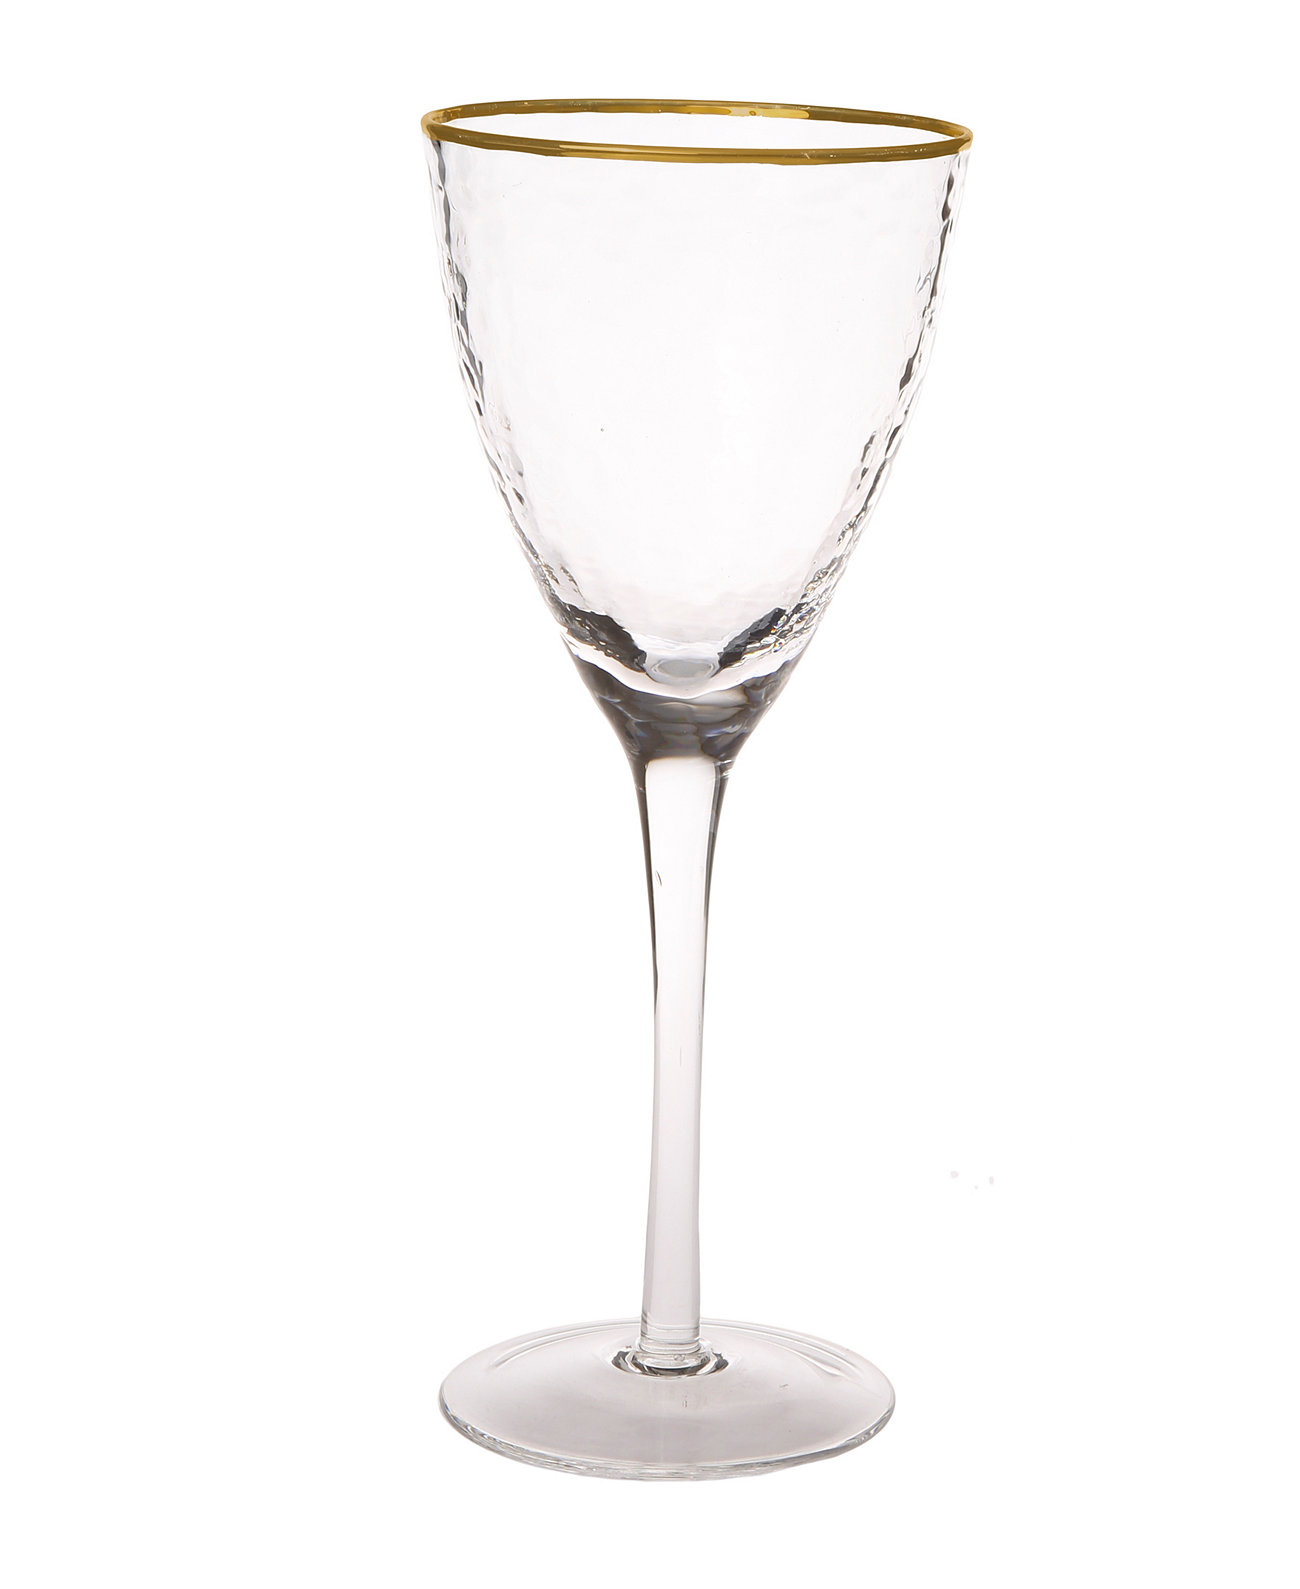 Набор из 6 стаканов для воды с простым дизайном Classic Touch